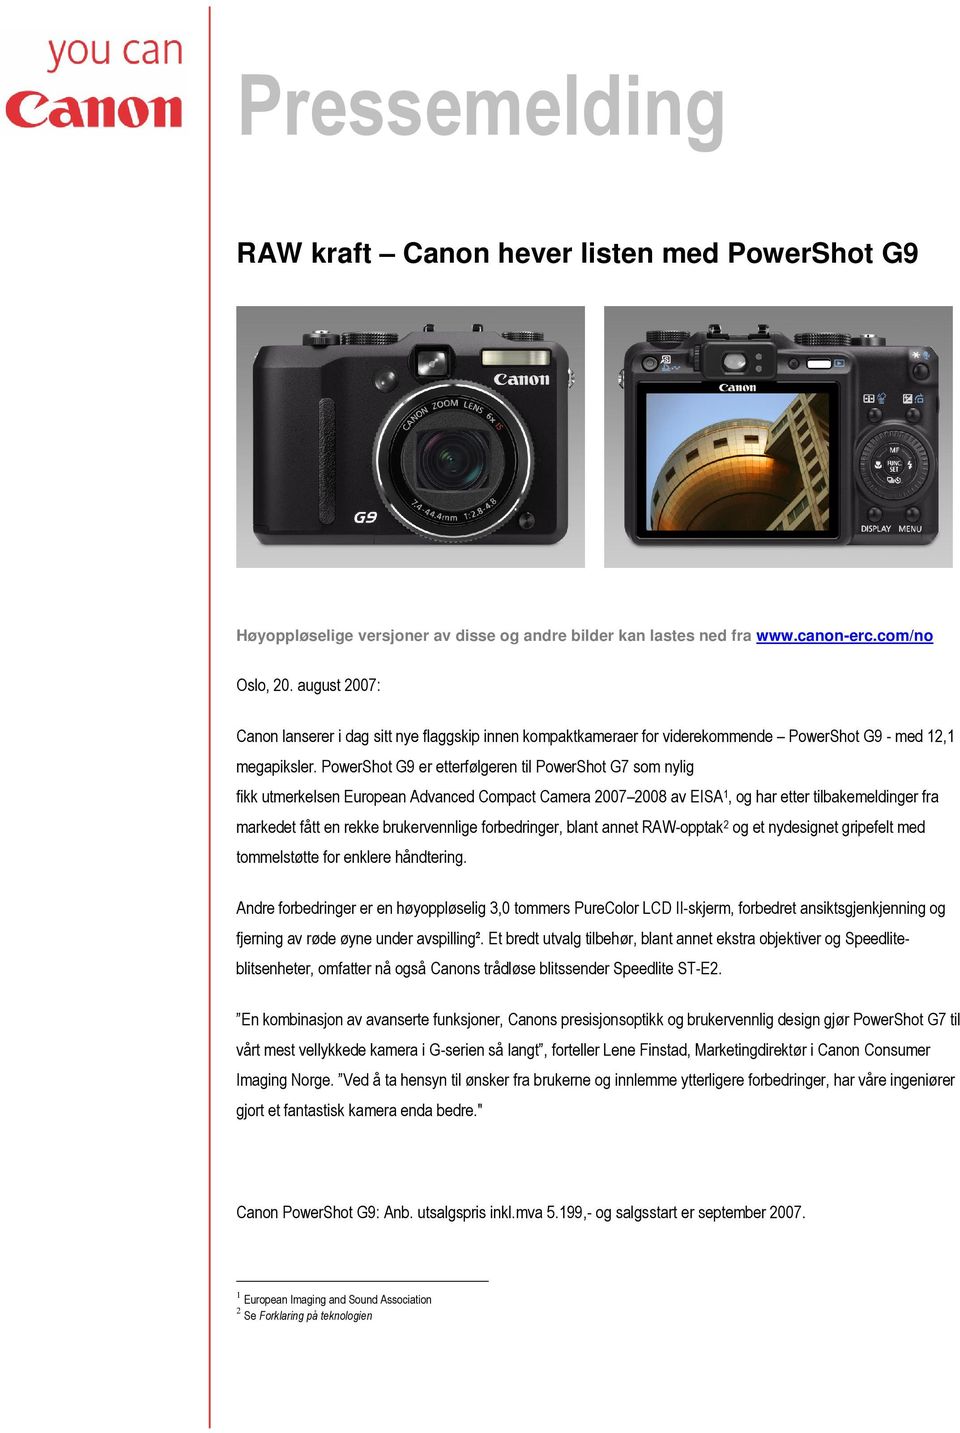 PowerShot G9 er etterfølgeren til PowerShot G7 som nylig fikk utmerkelsen European Advanced Compact Camera 2007 2008 av EISA 1, og har etter tilbakemeldinger fra markedet fått en rekke brukervennlige